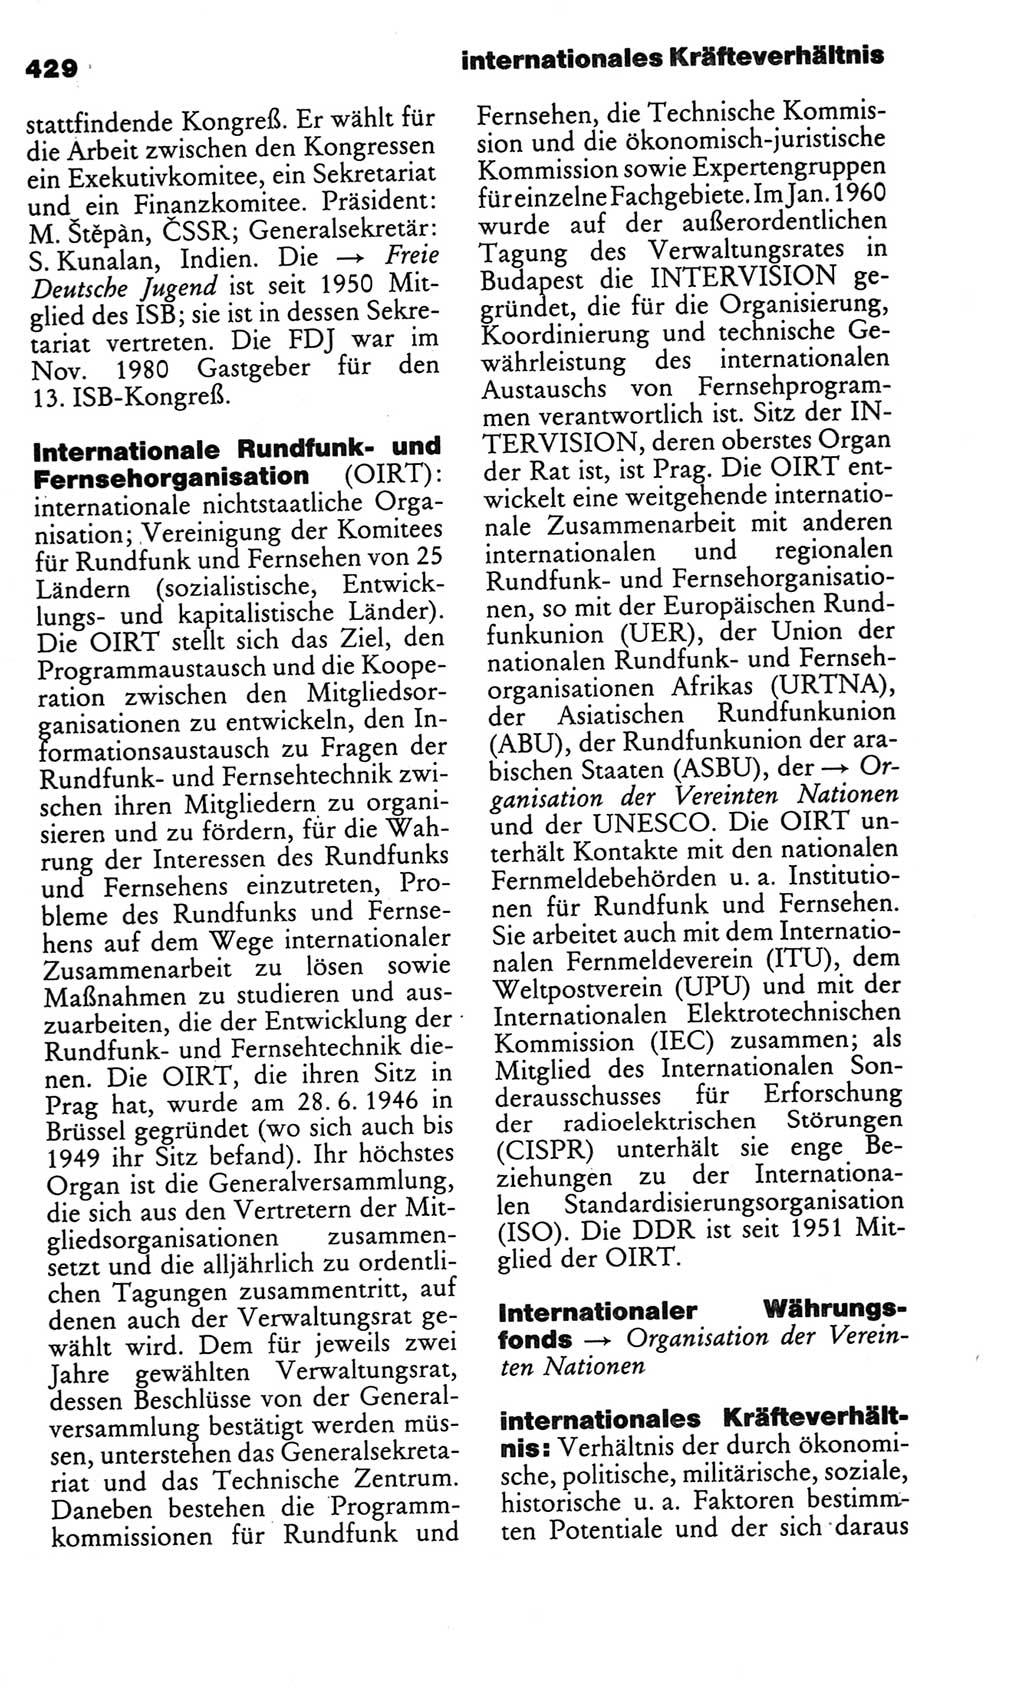 Kleines politisches Wörterbuch [Deutsche Demokratische Republik (DDR)] 1986, Seite 429 (Kl. pol. Wb. DDR 1986, S. 429)